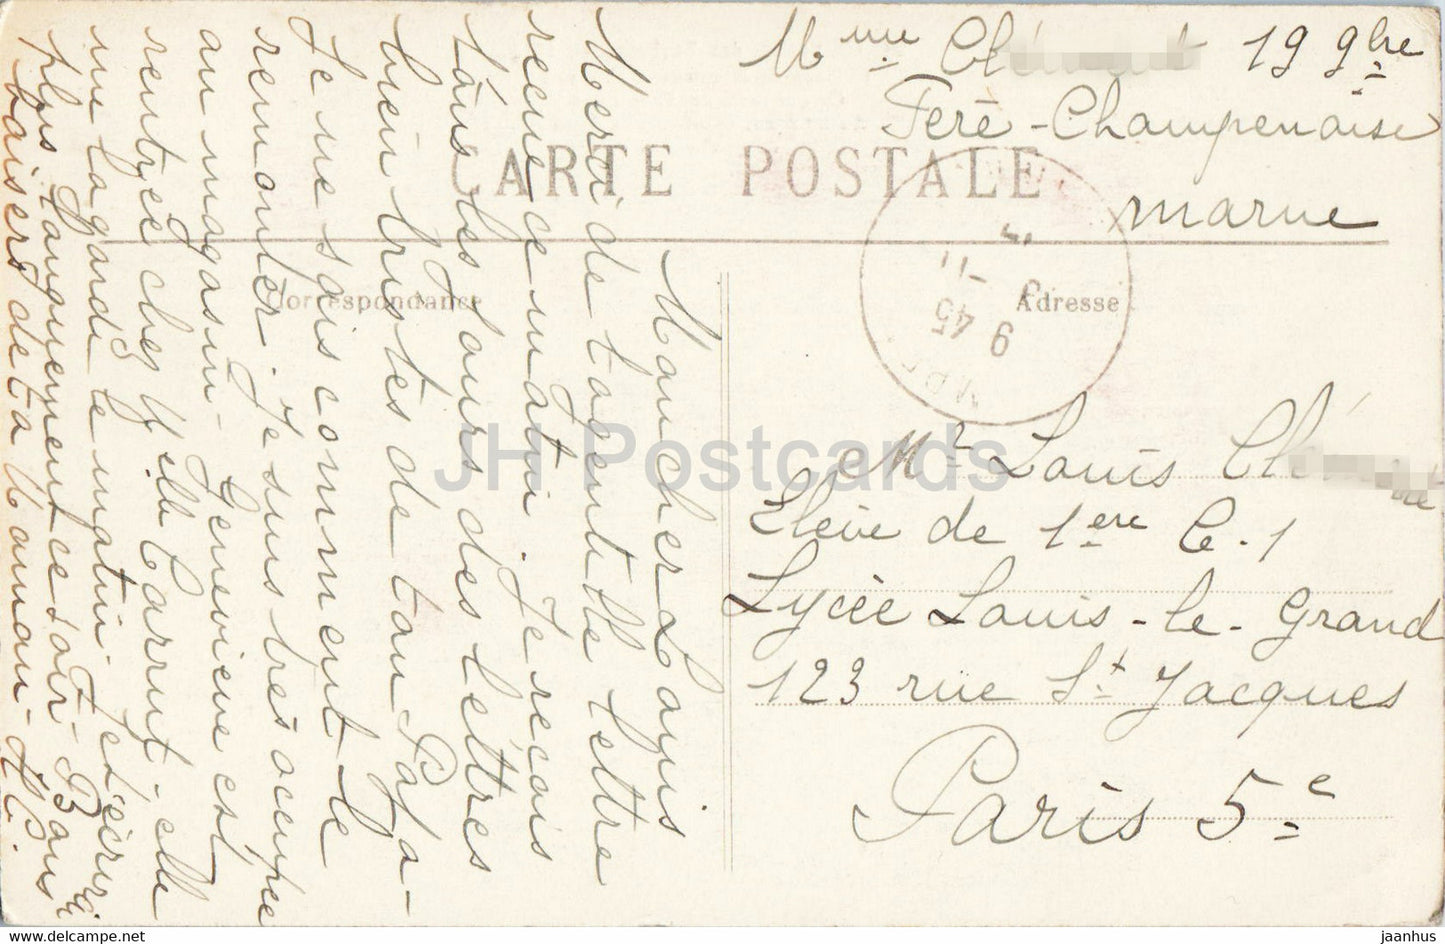 Chateau de Mondement - Ce qui reste des Communs - L'Invasion des Barbares en 1914 - 21 - old postcard - France - used